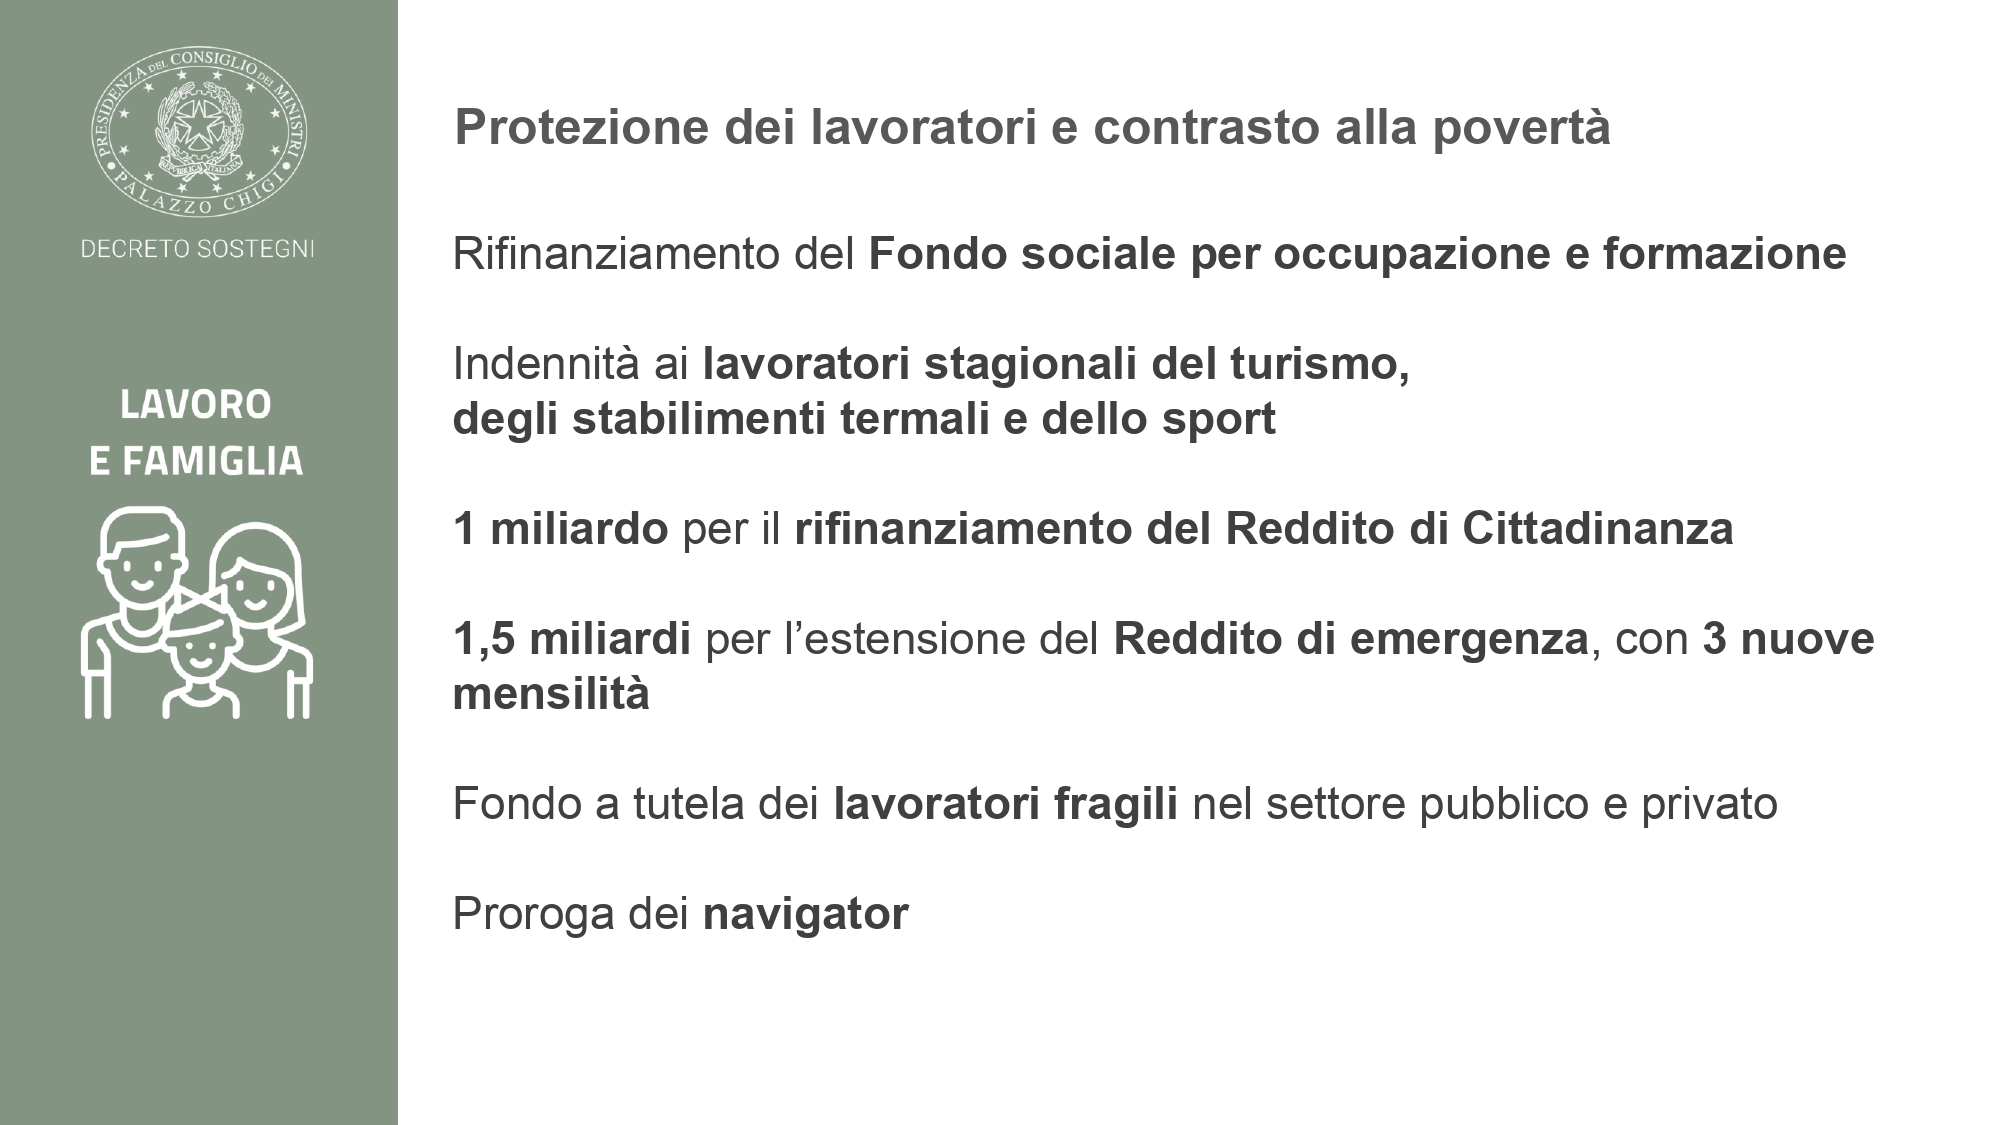 Protezione lavoratori decreto Sostegni - Credit: Palazzo Chigi